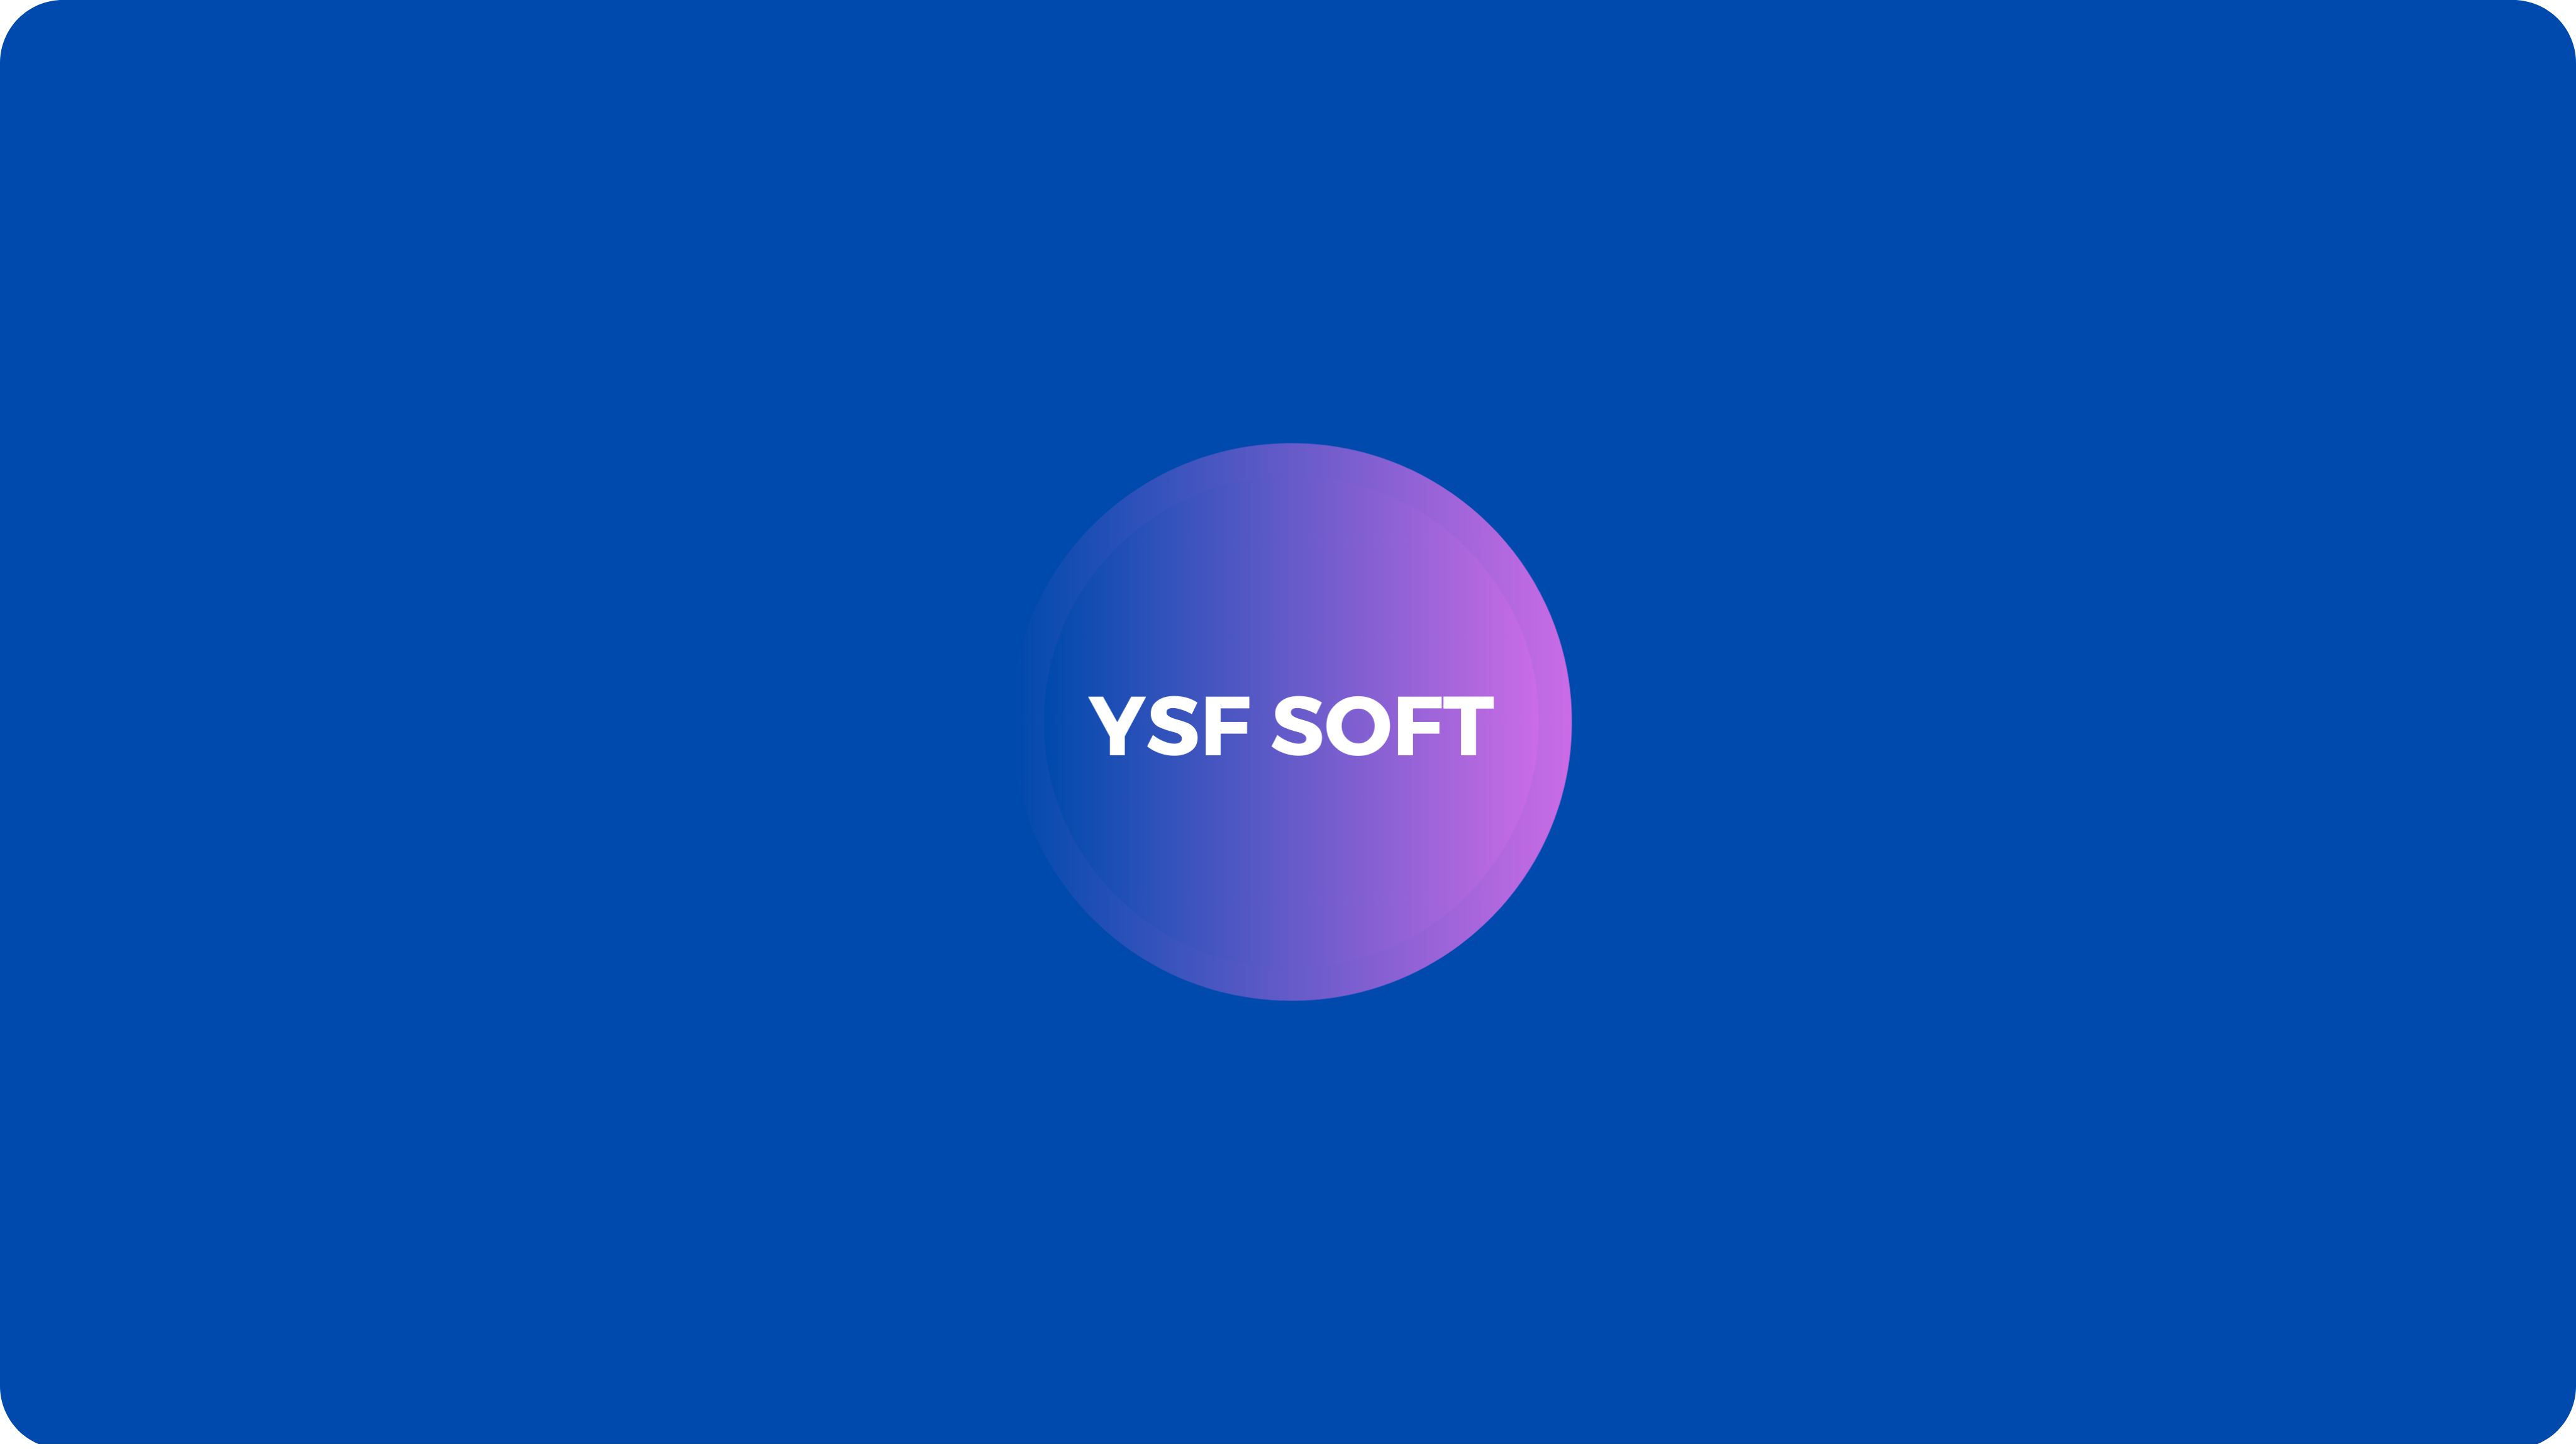 YSF SOFT